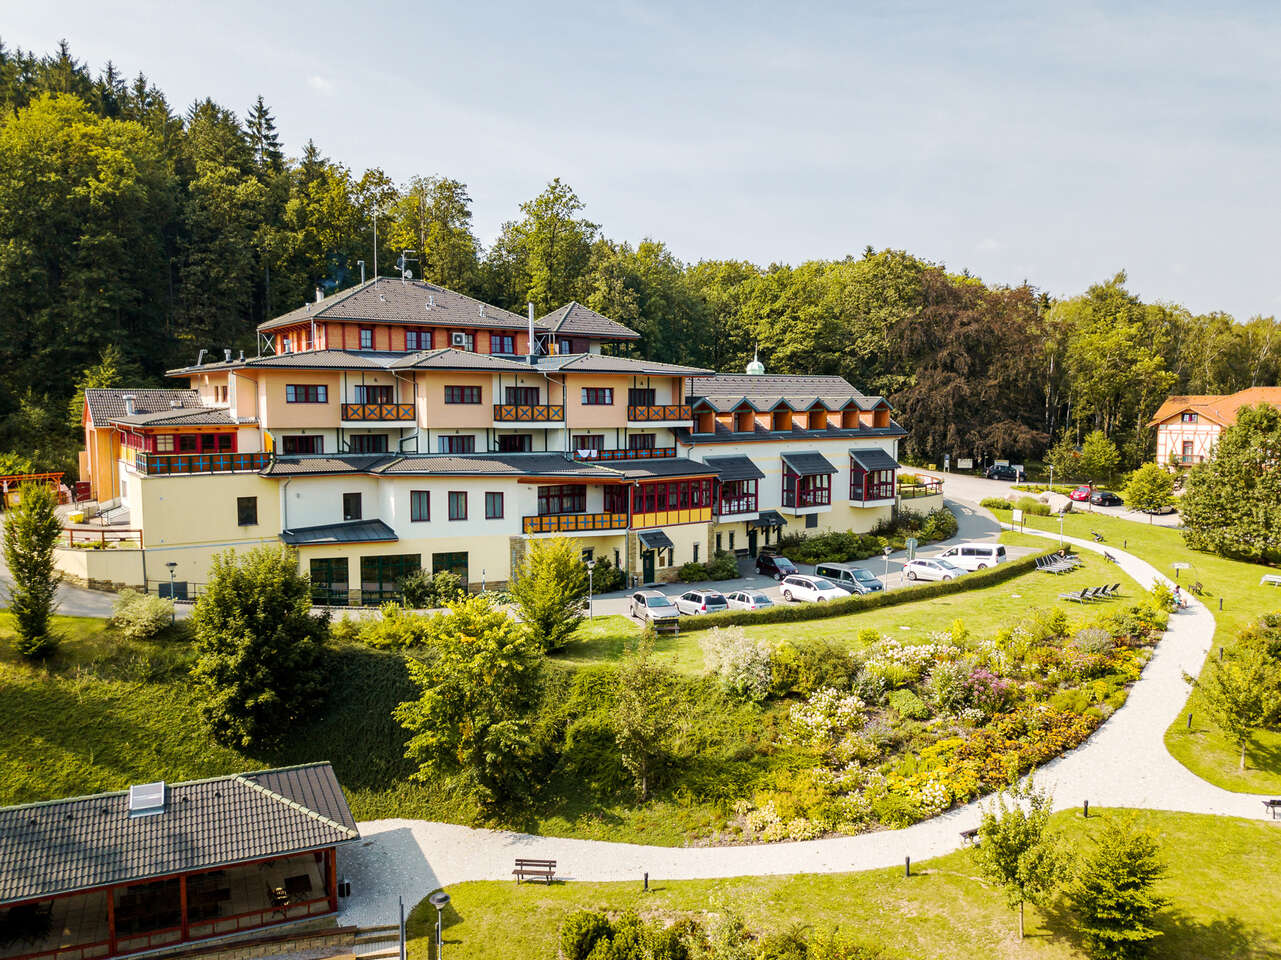 Hotel a vila Studánka v Orlických horách s neobmedzený wellness a možnosťou kúpeľného pobytu s procedúrami